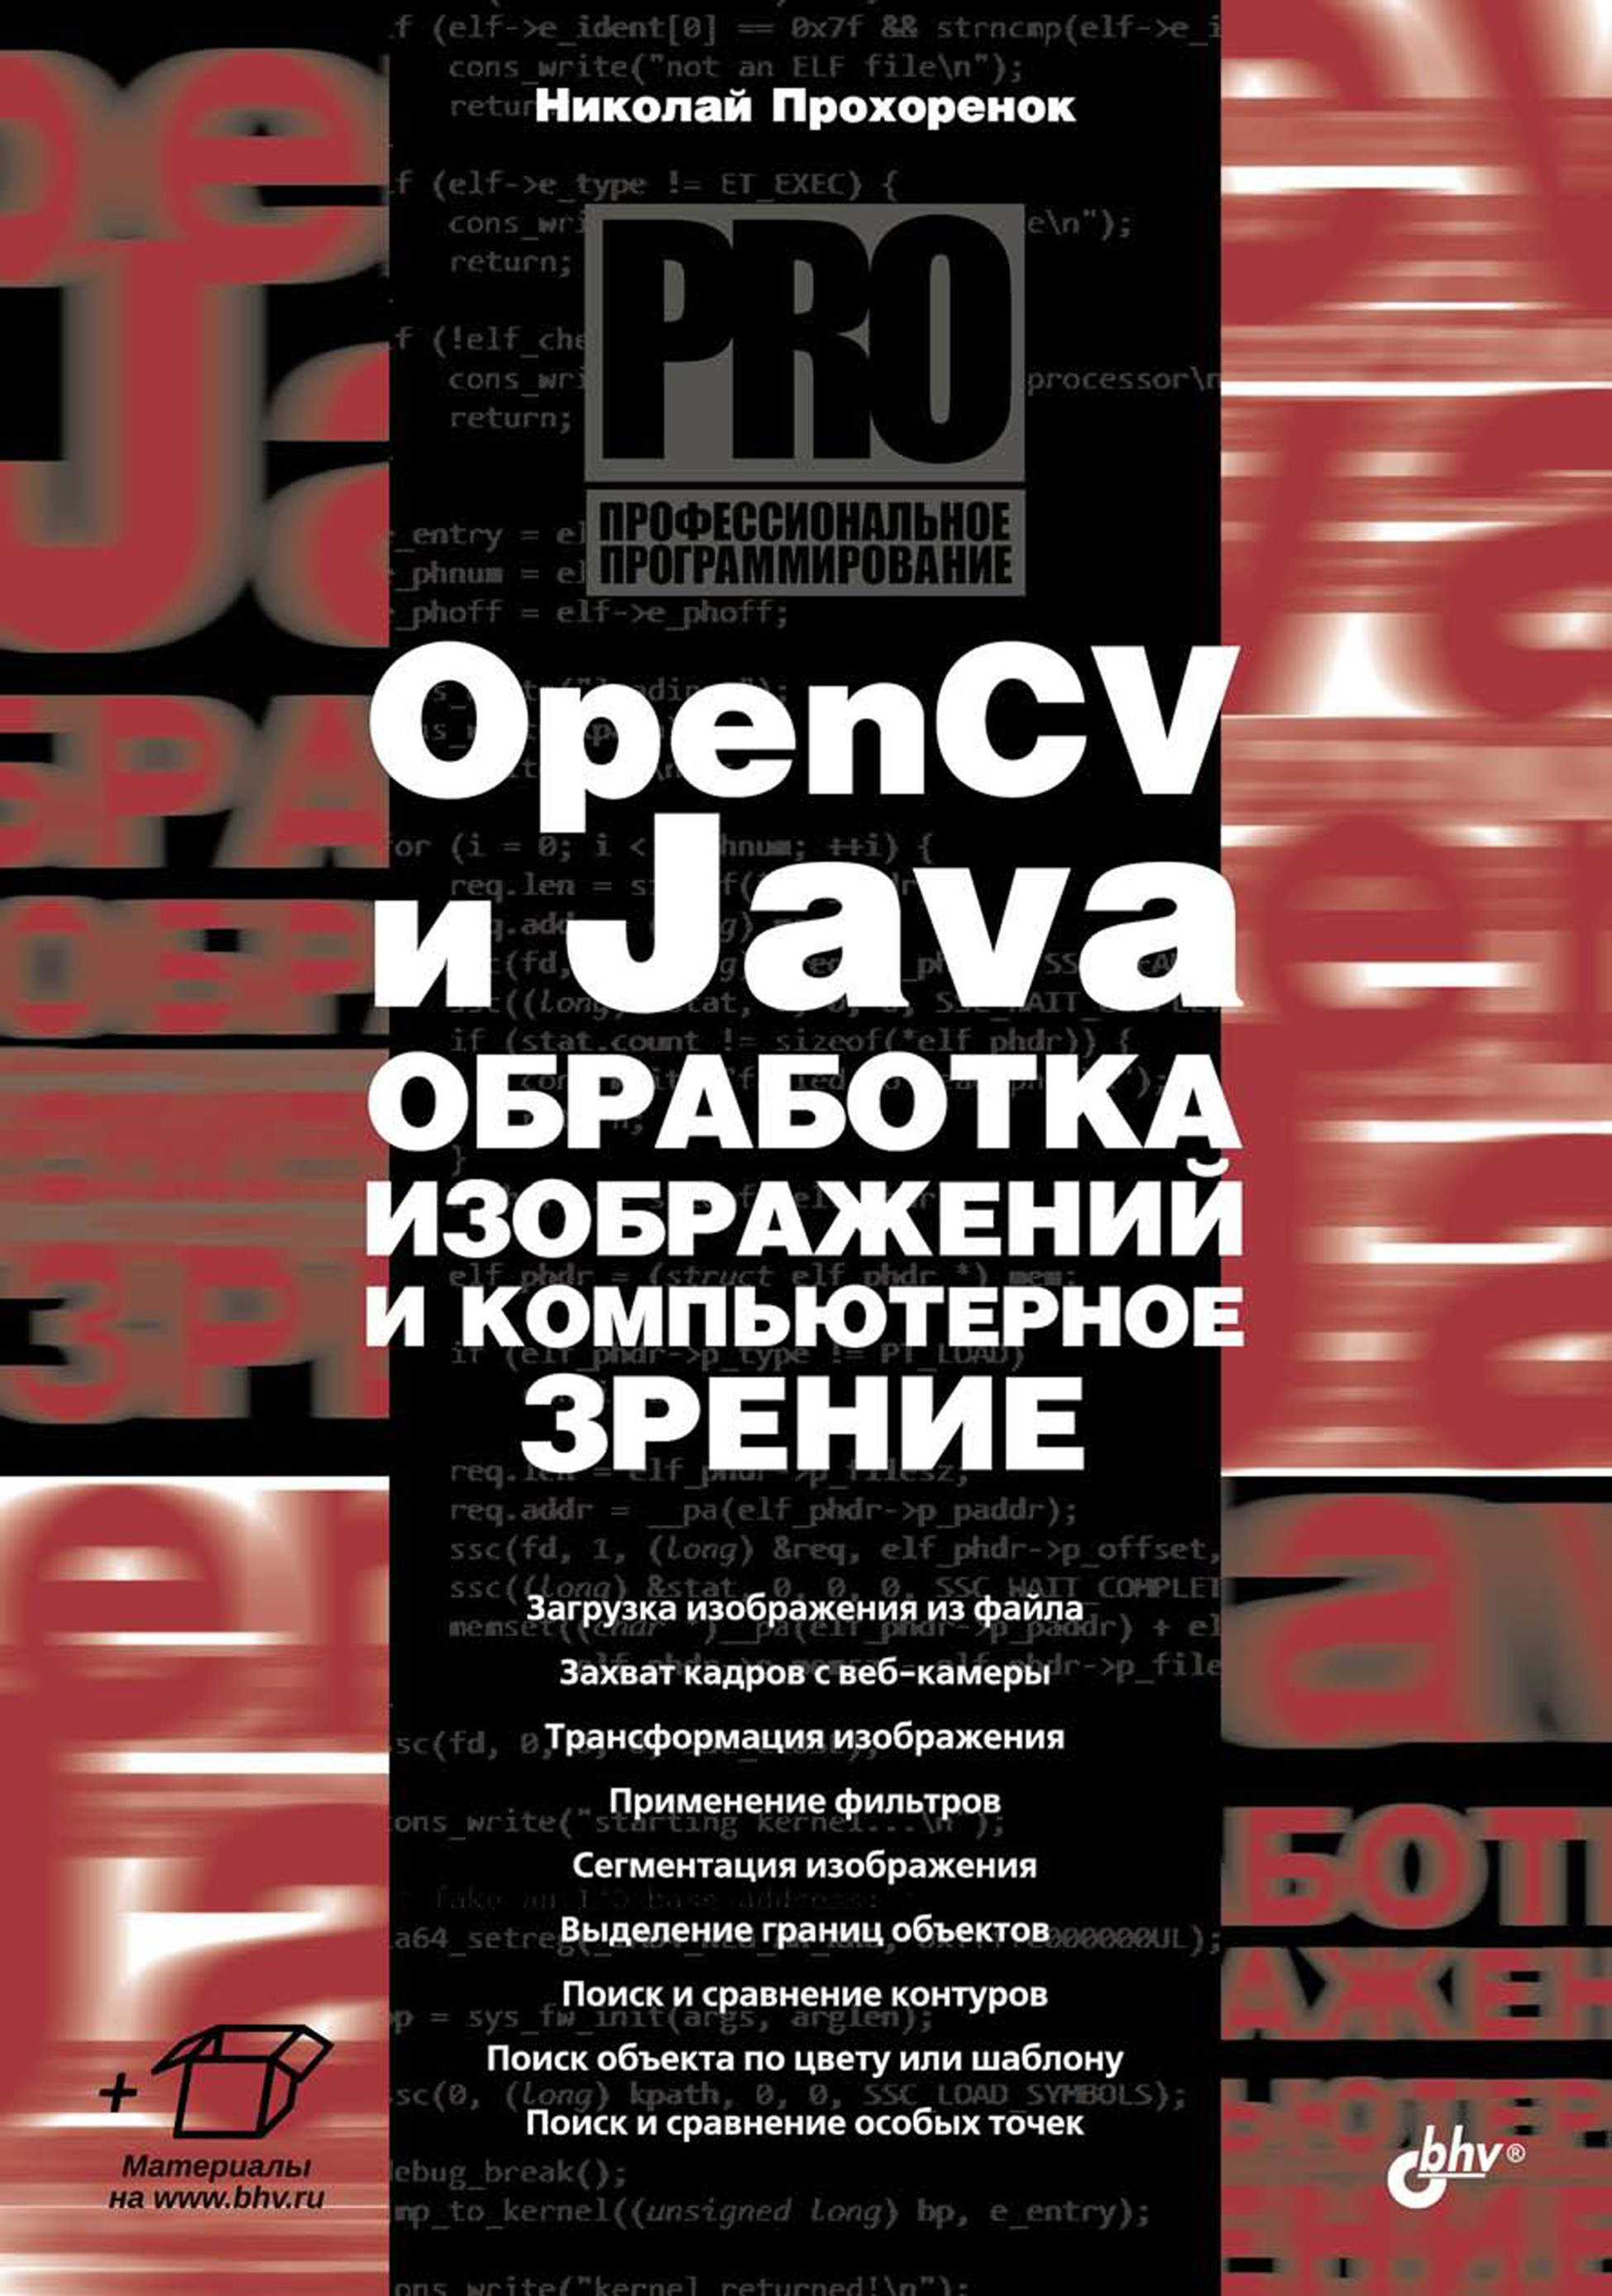 Книга Профессиональное программирование OpenCV и Java. Обработка изображений и компьютерное зрение созданная Николай Прохоренок может относится к жанру программирование, руководства. Стоимость электронной книги OpenCV и Java. Обработка изображений и компьютерное зрение с идентификатором 39288513 составляет 400.00 руб.